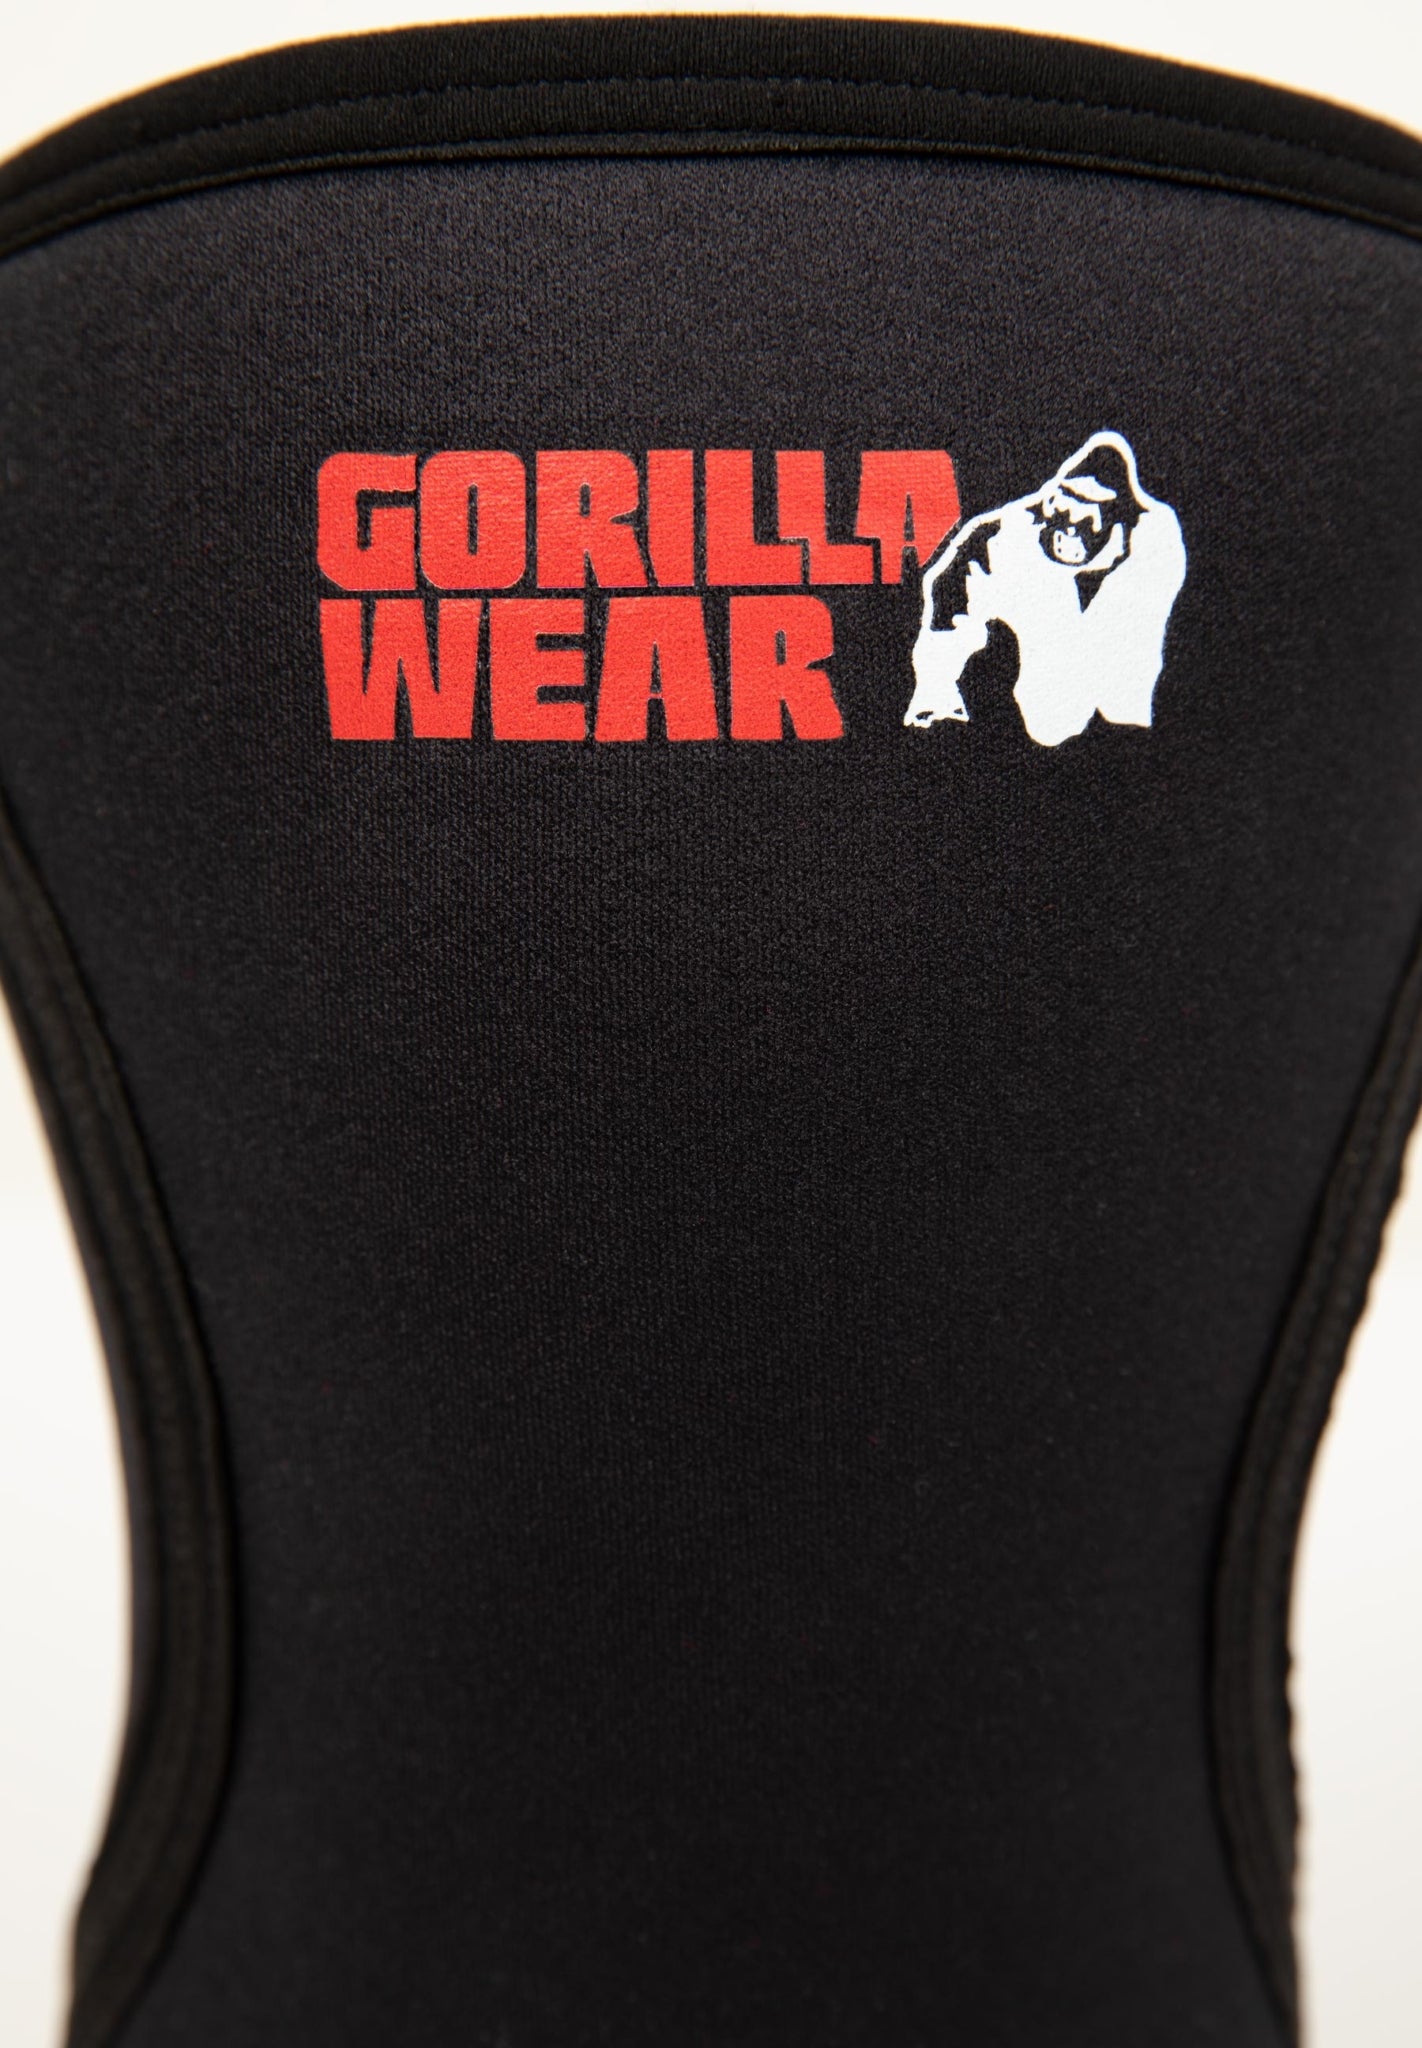 Gorilla Wear 5mm Knee Sleeves - Schwarz